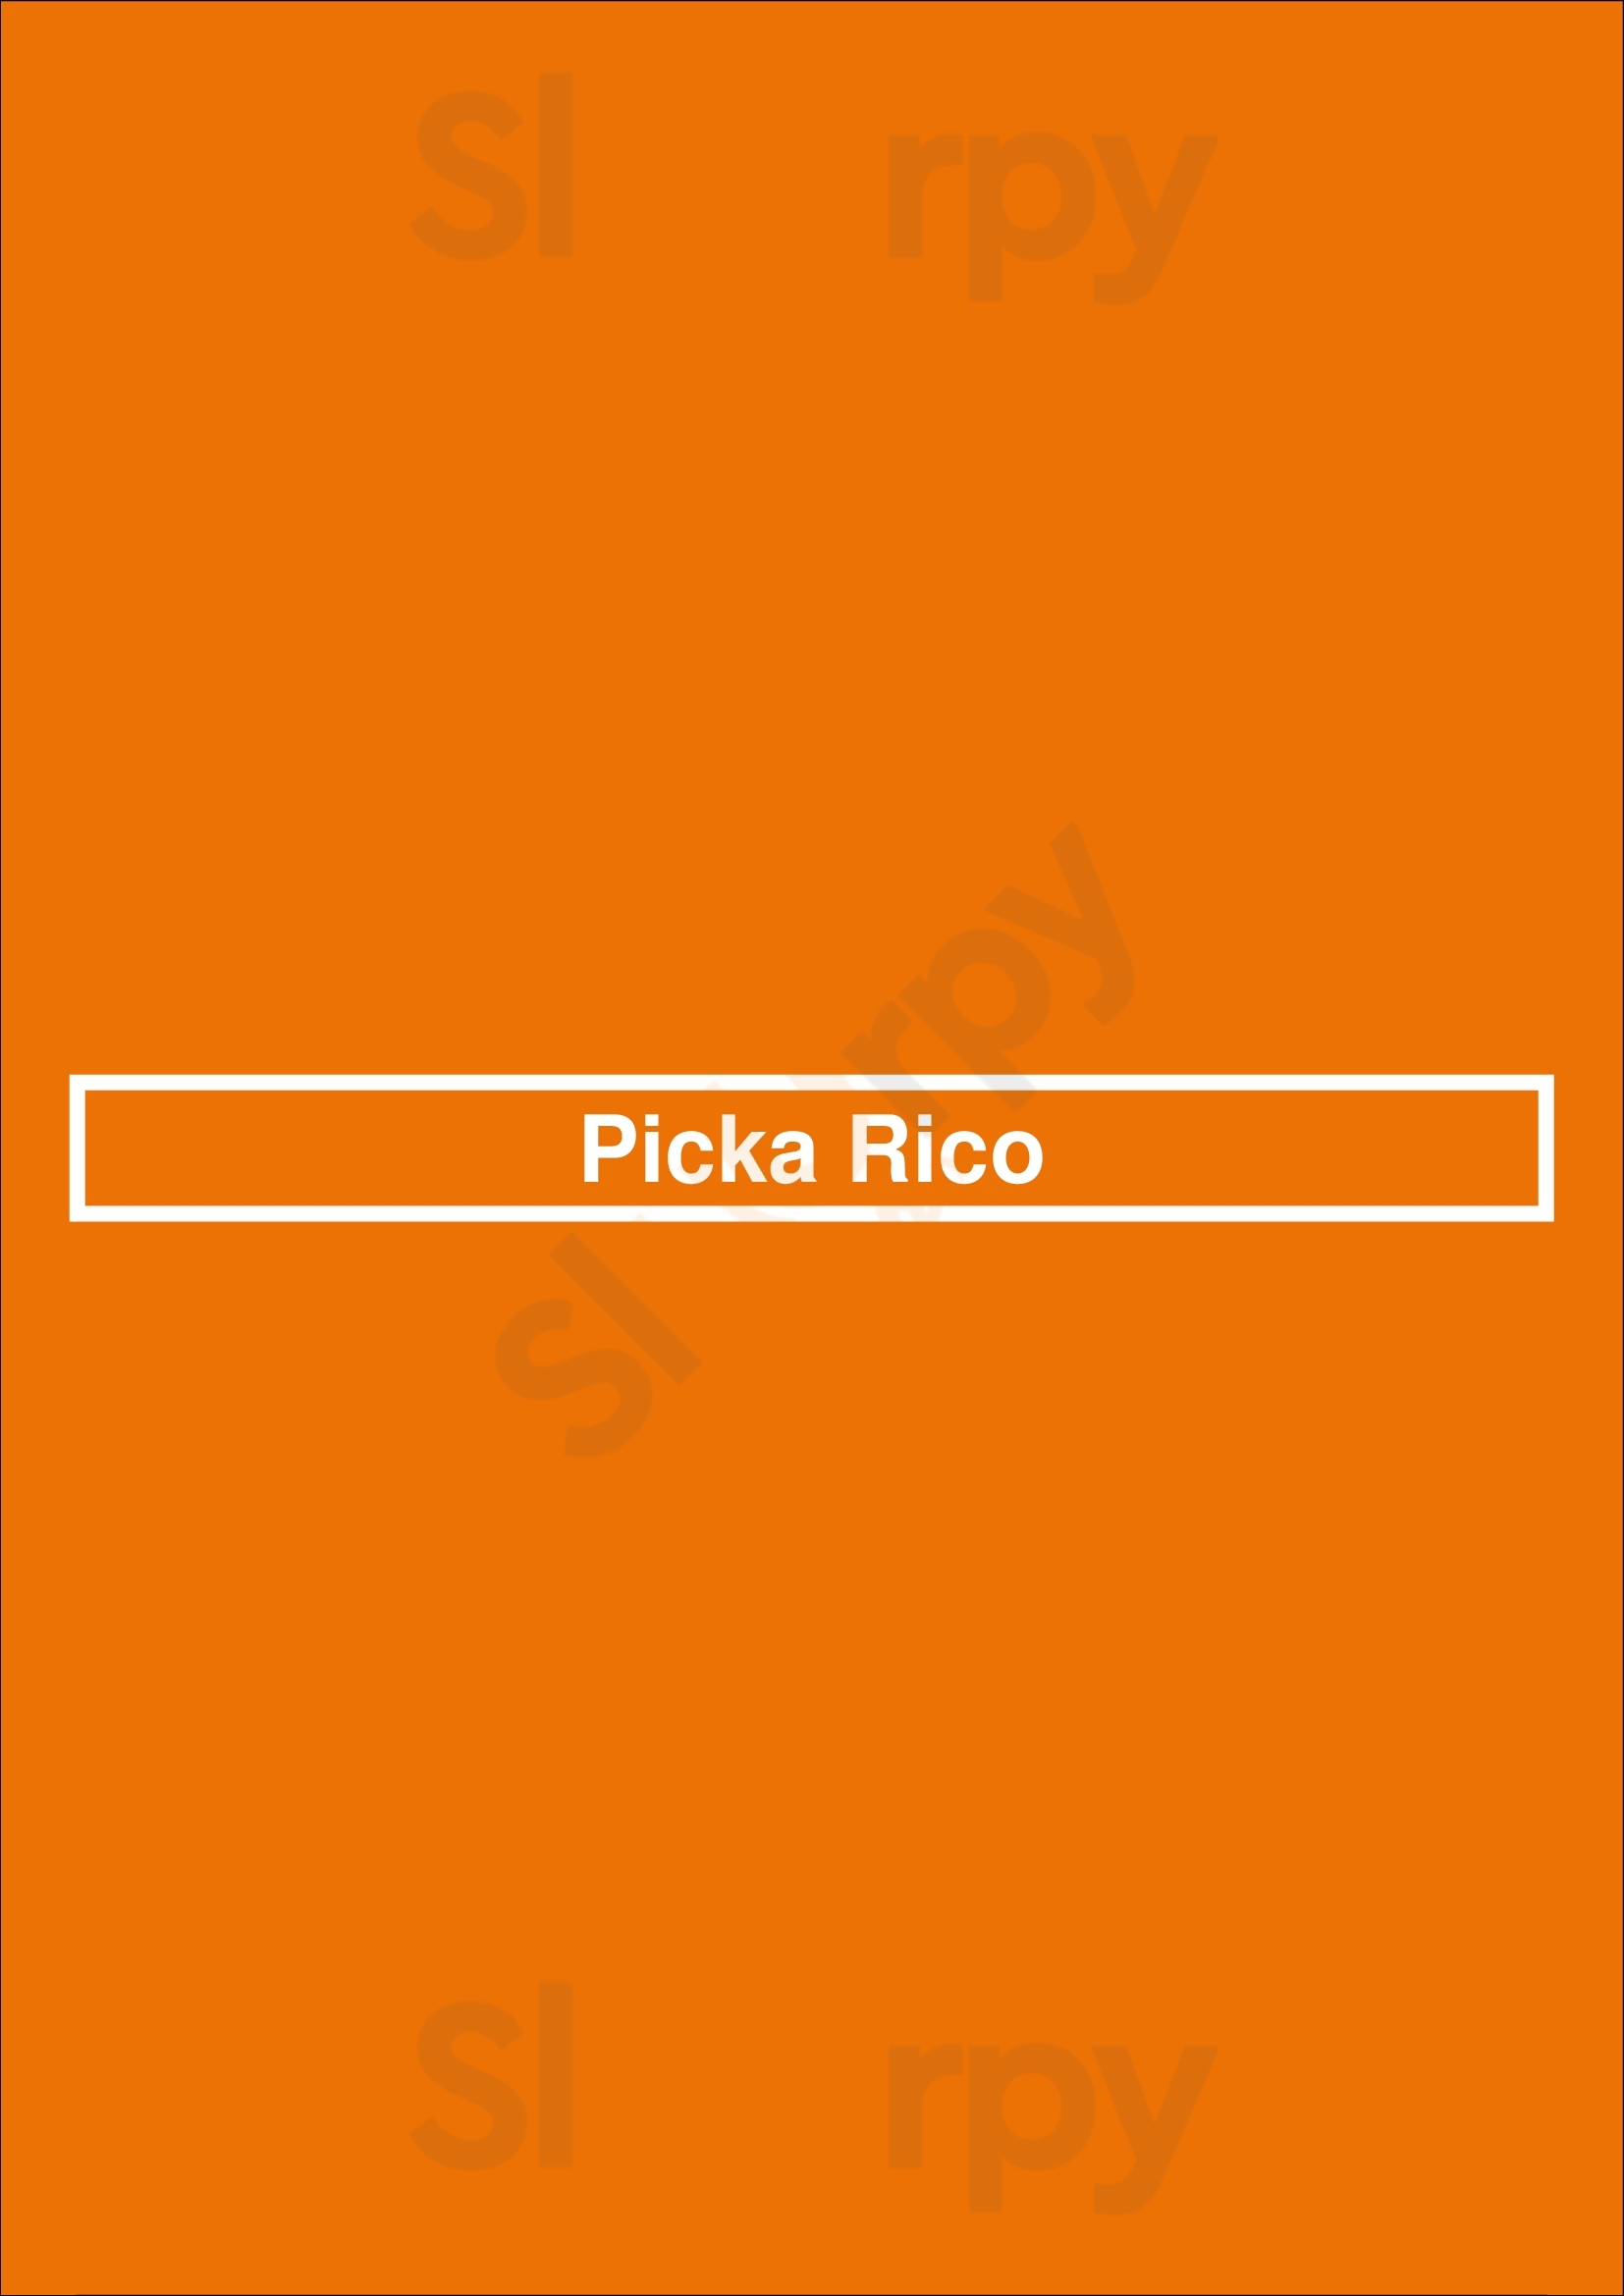 Picka Rico Los Angeles Menu - 1